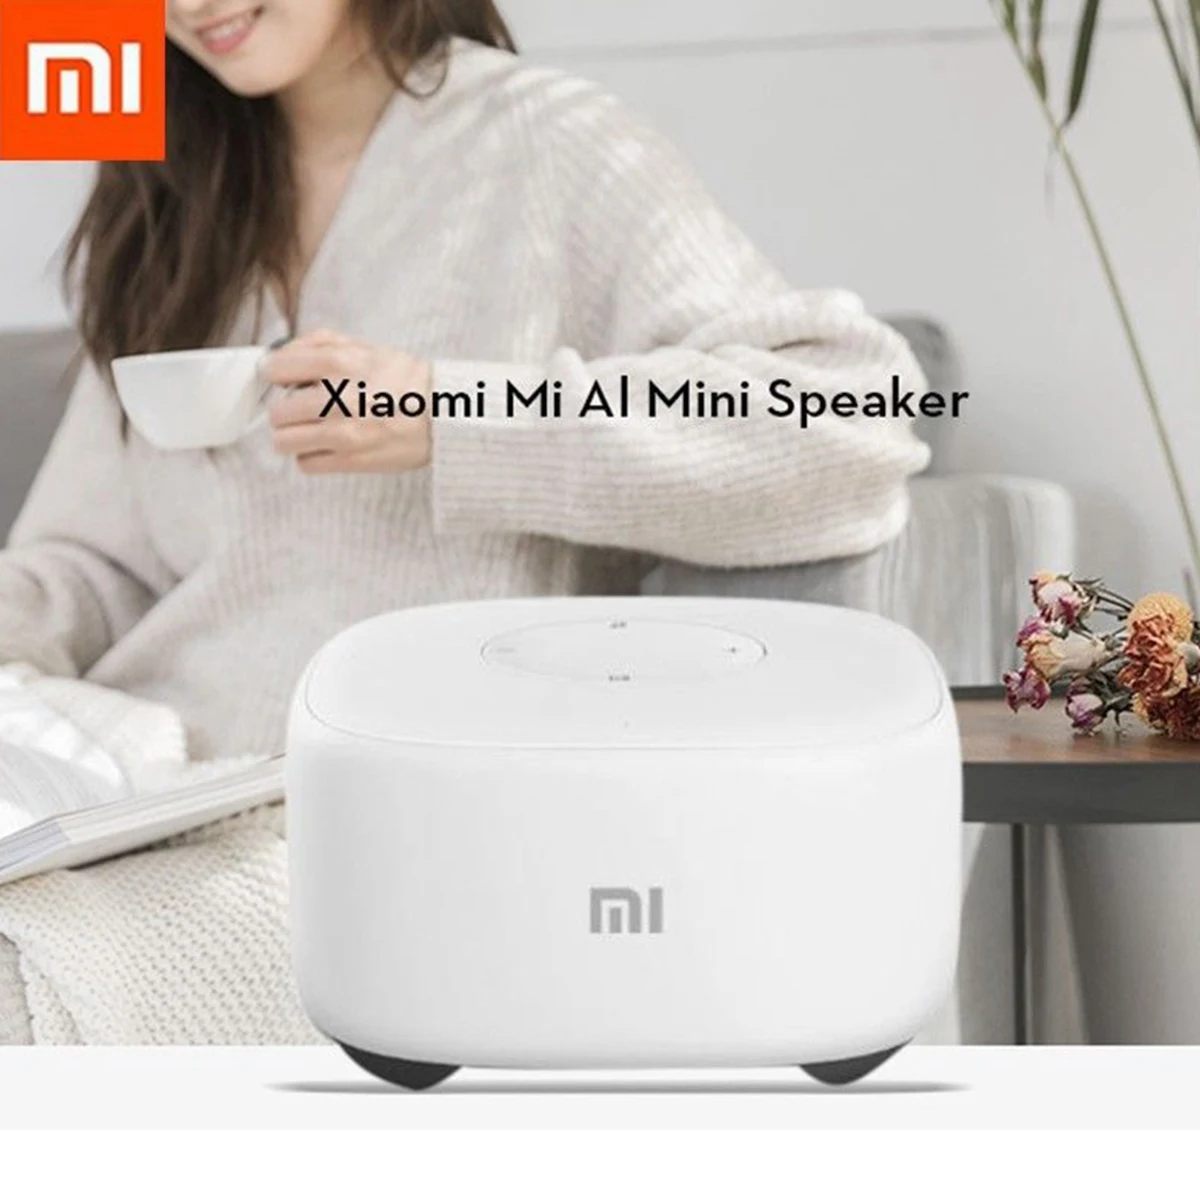 2,4G Wifi xiaomi Мини Bluetooth динамик умный голос беспроводной портативный динамик с микрофоном умный дом контроллер